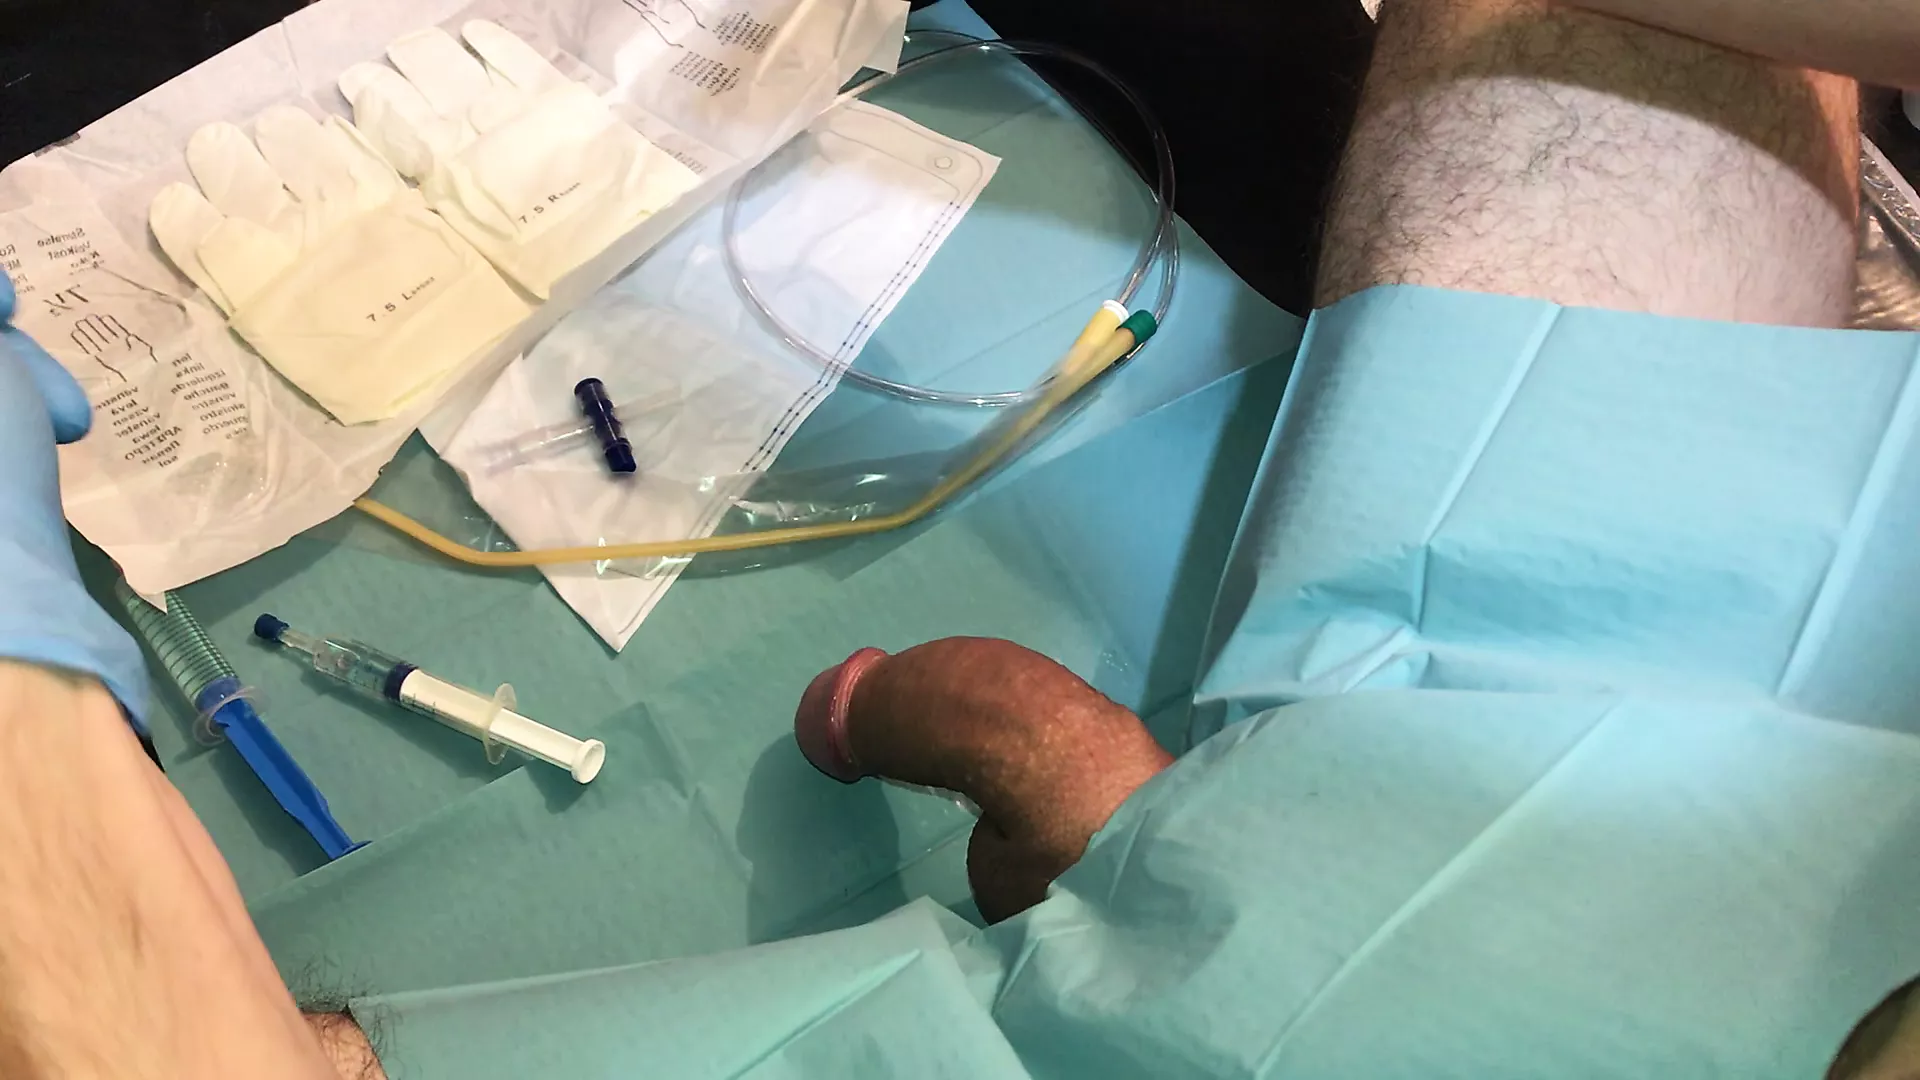 cbt catheter amateur sex pics blog